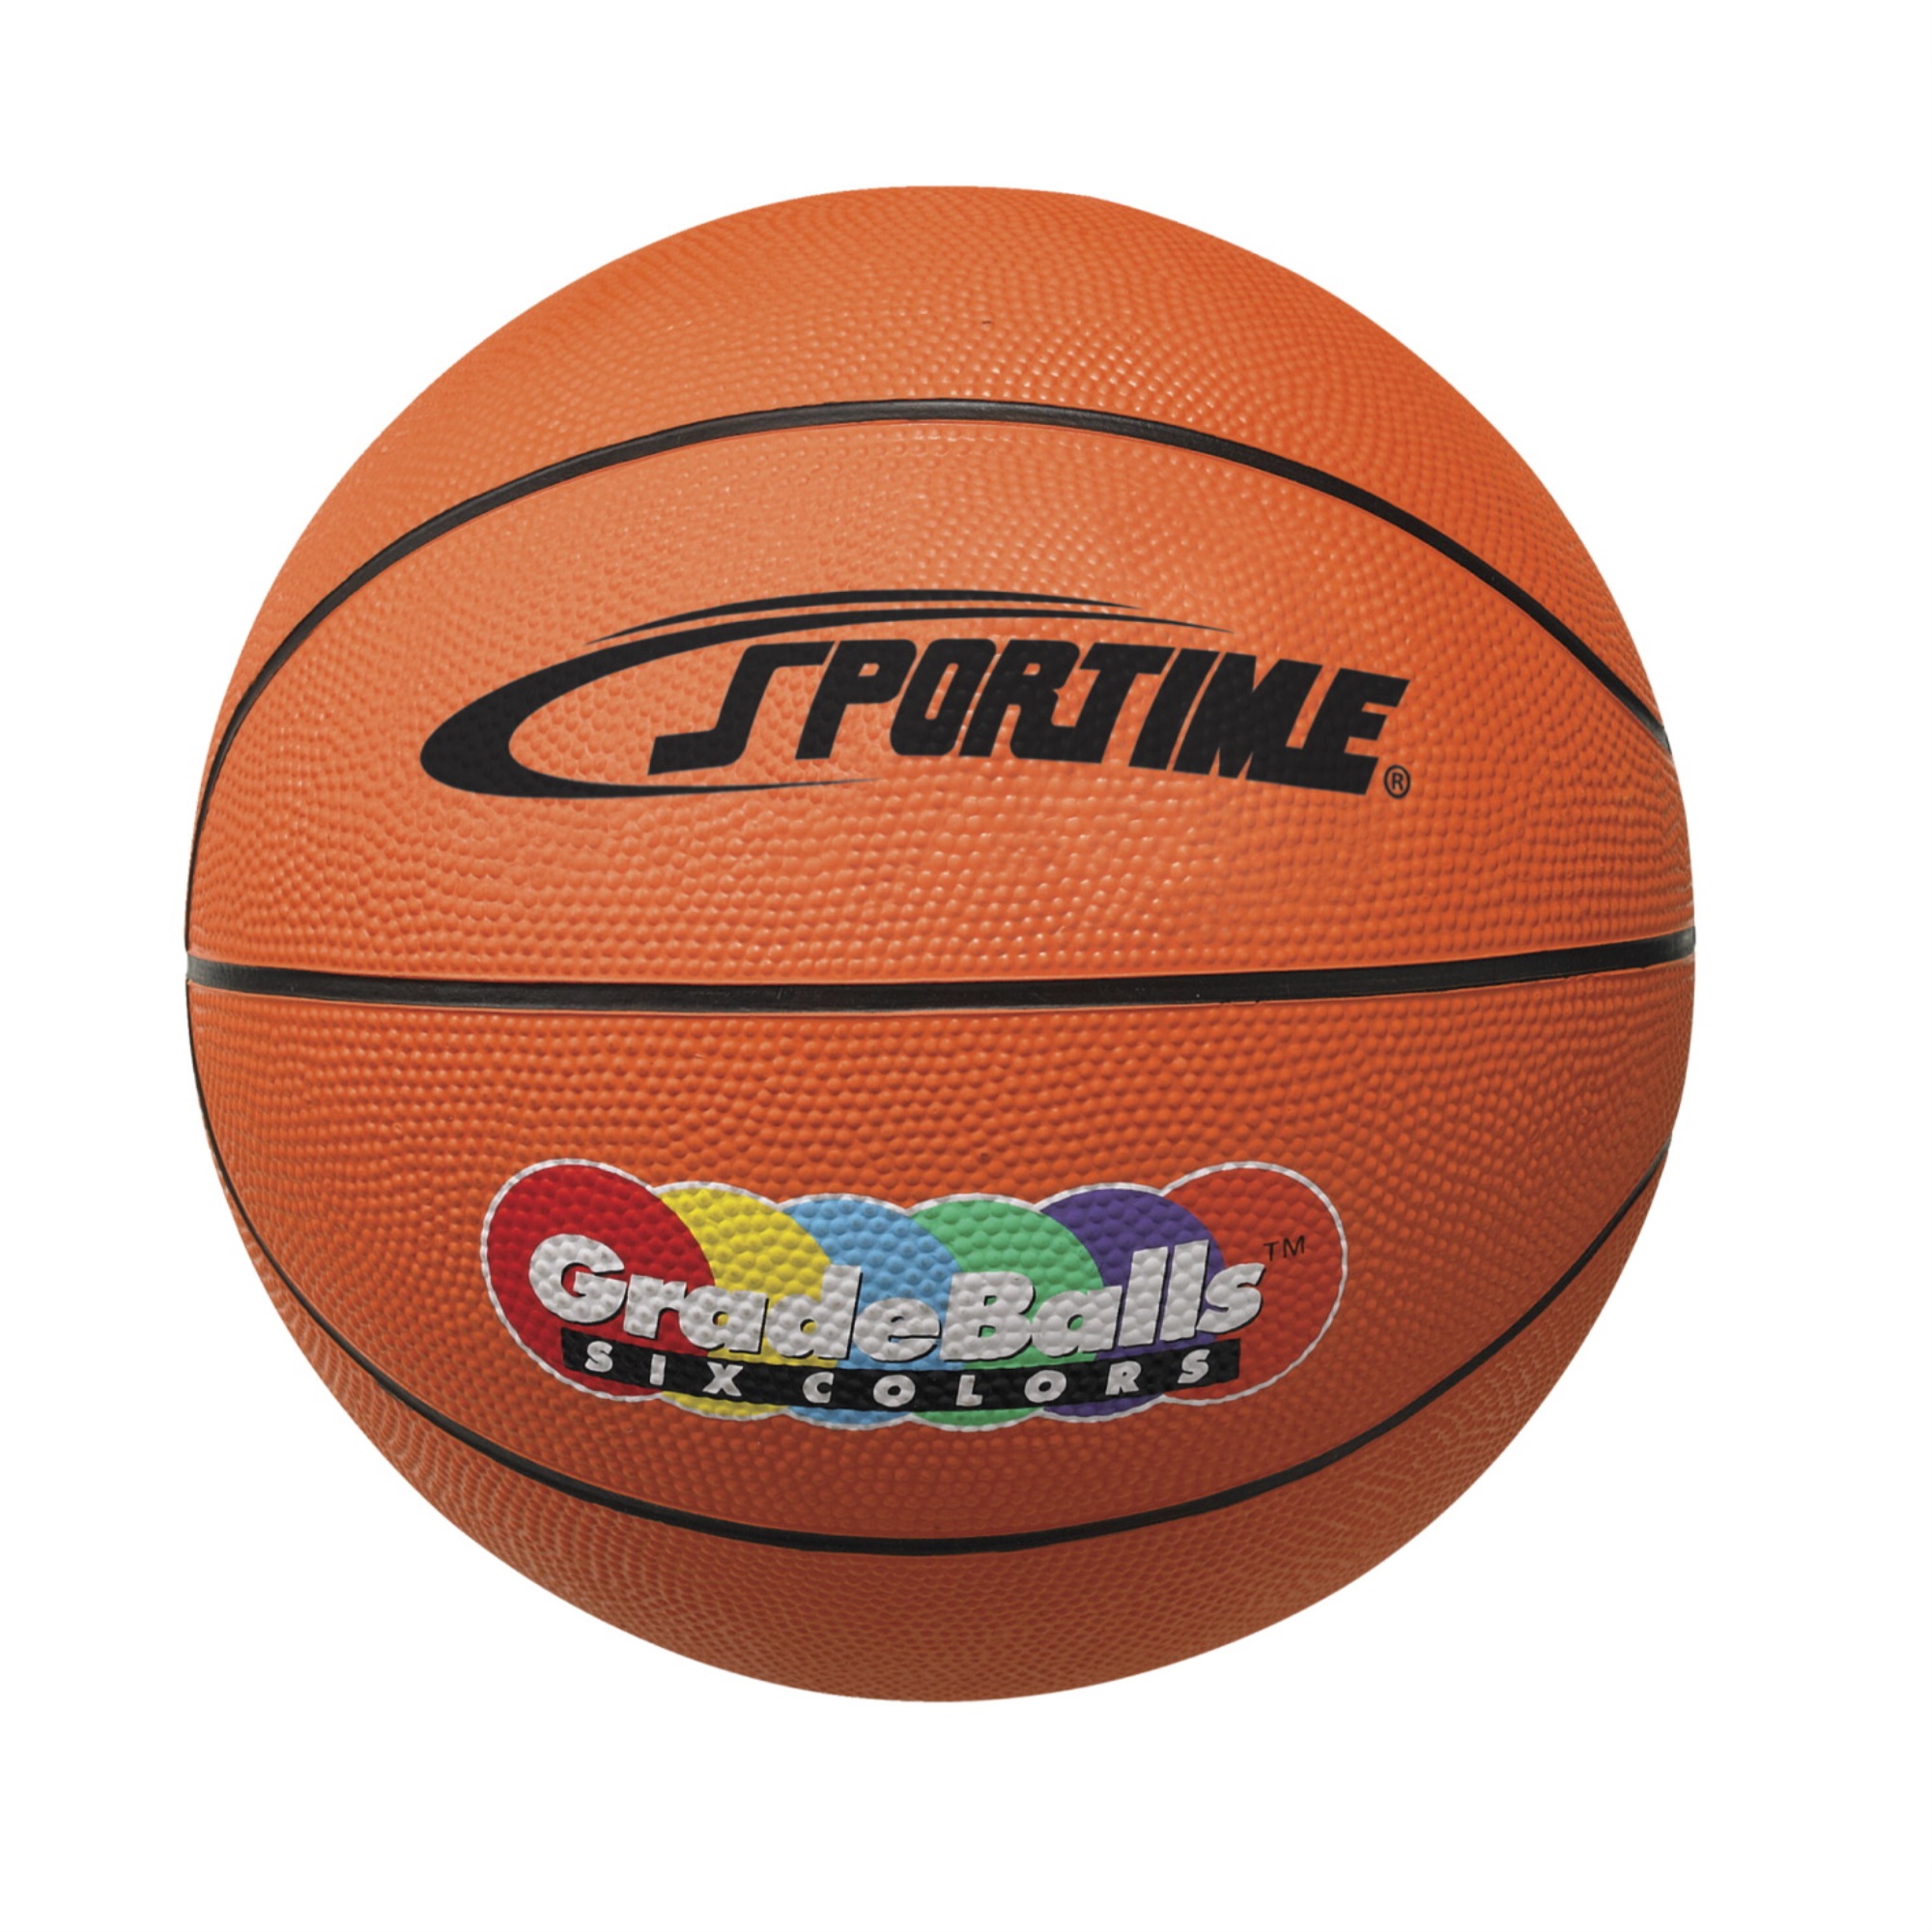 Sportime 27 Inch Gradeball Rubber Junior Basketball, Orange